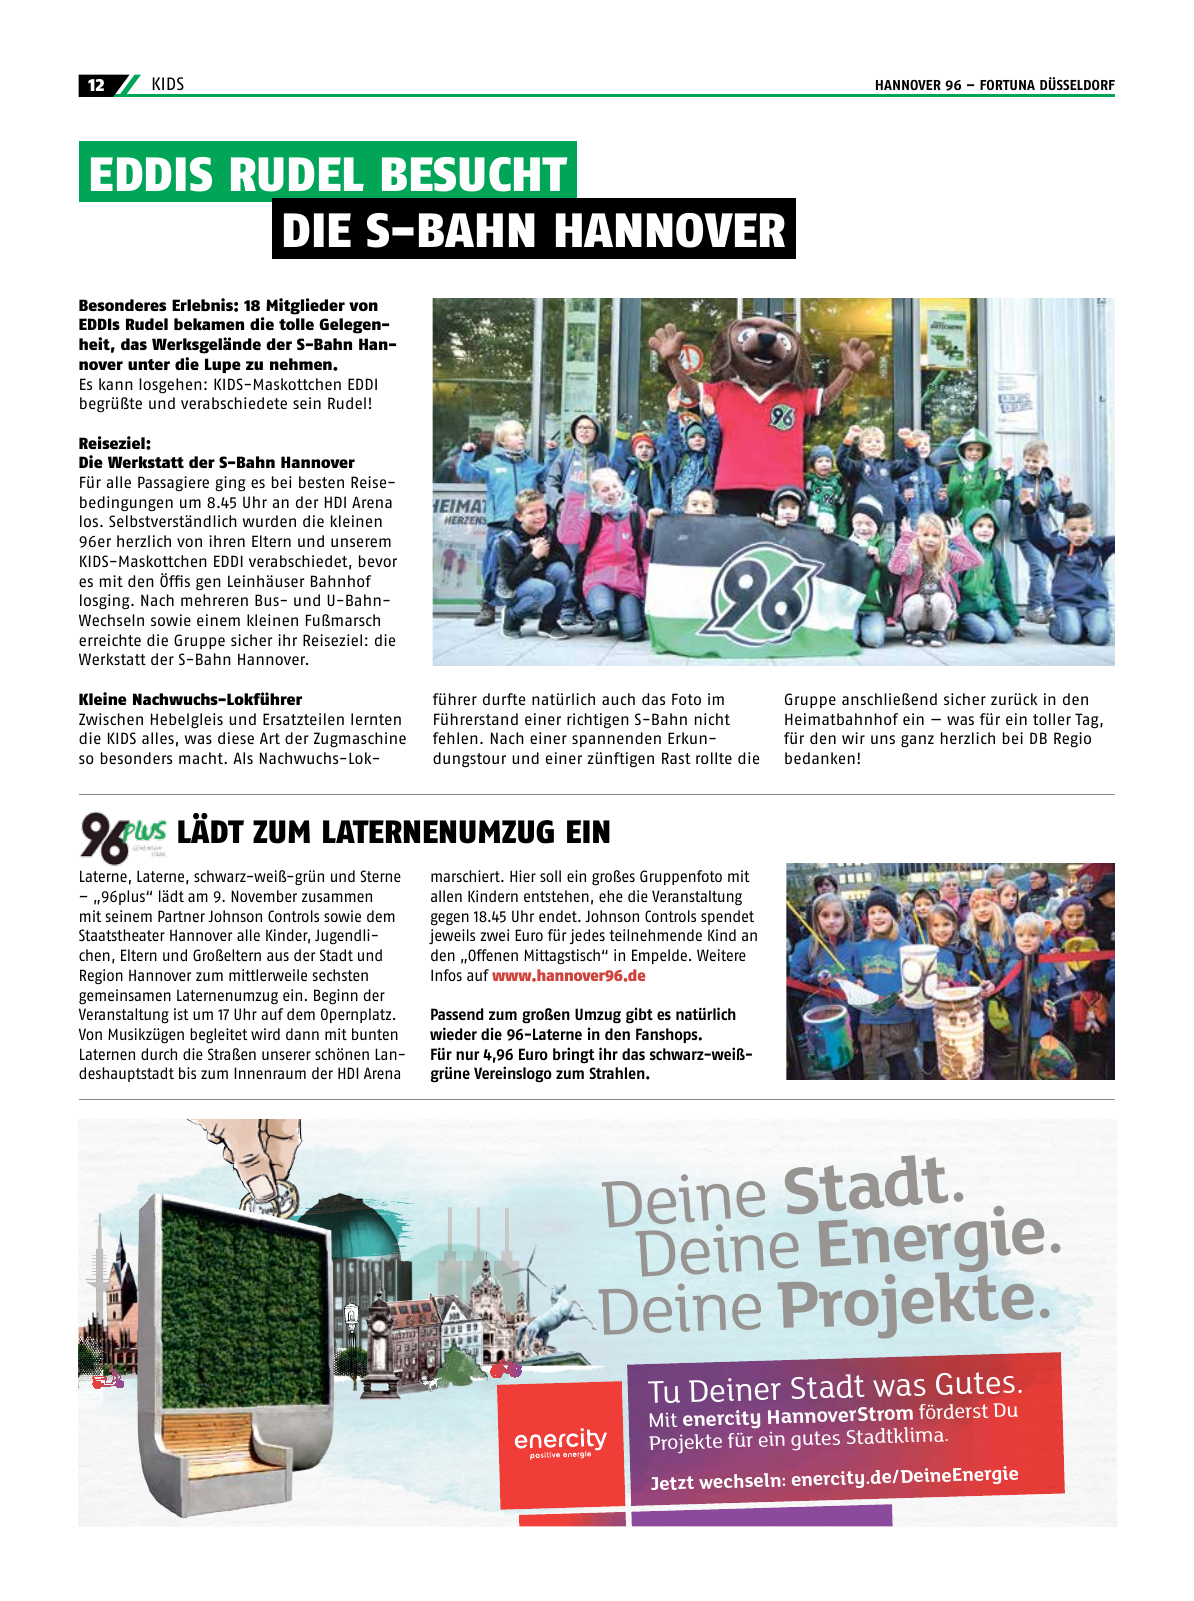 Vorschau 96-Die-Zeitung-DFB2-2016 Seite 12